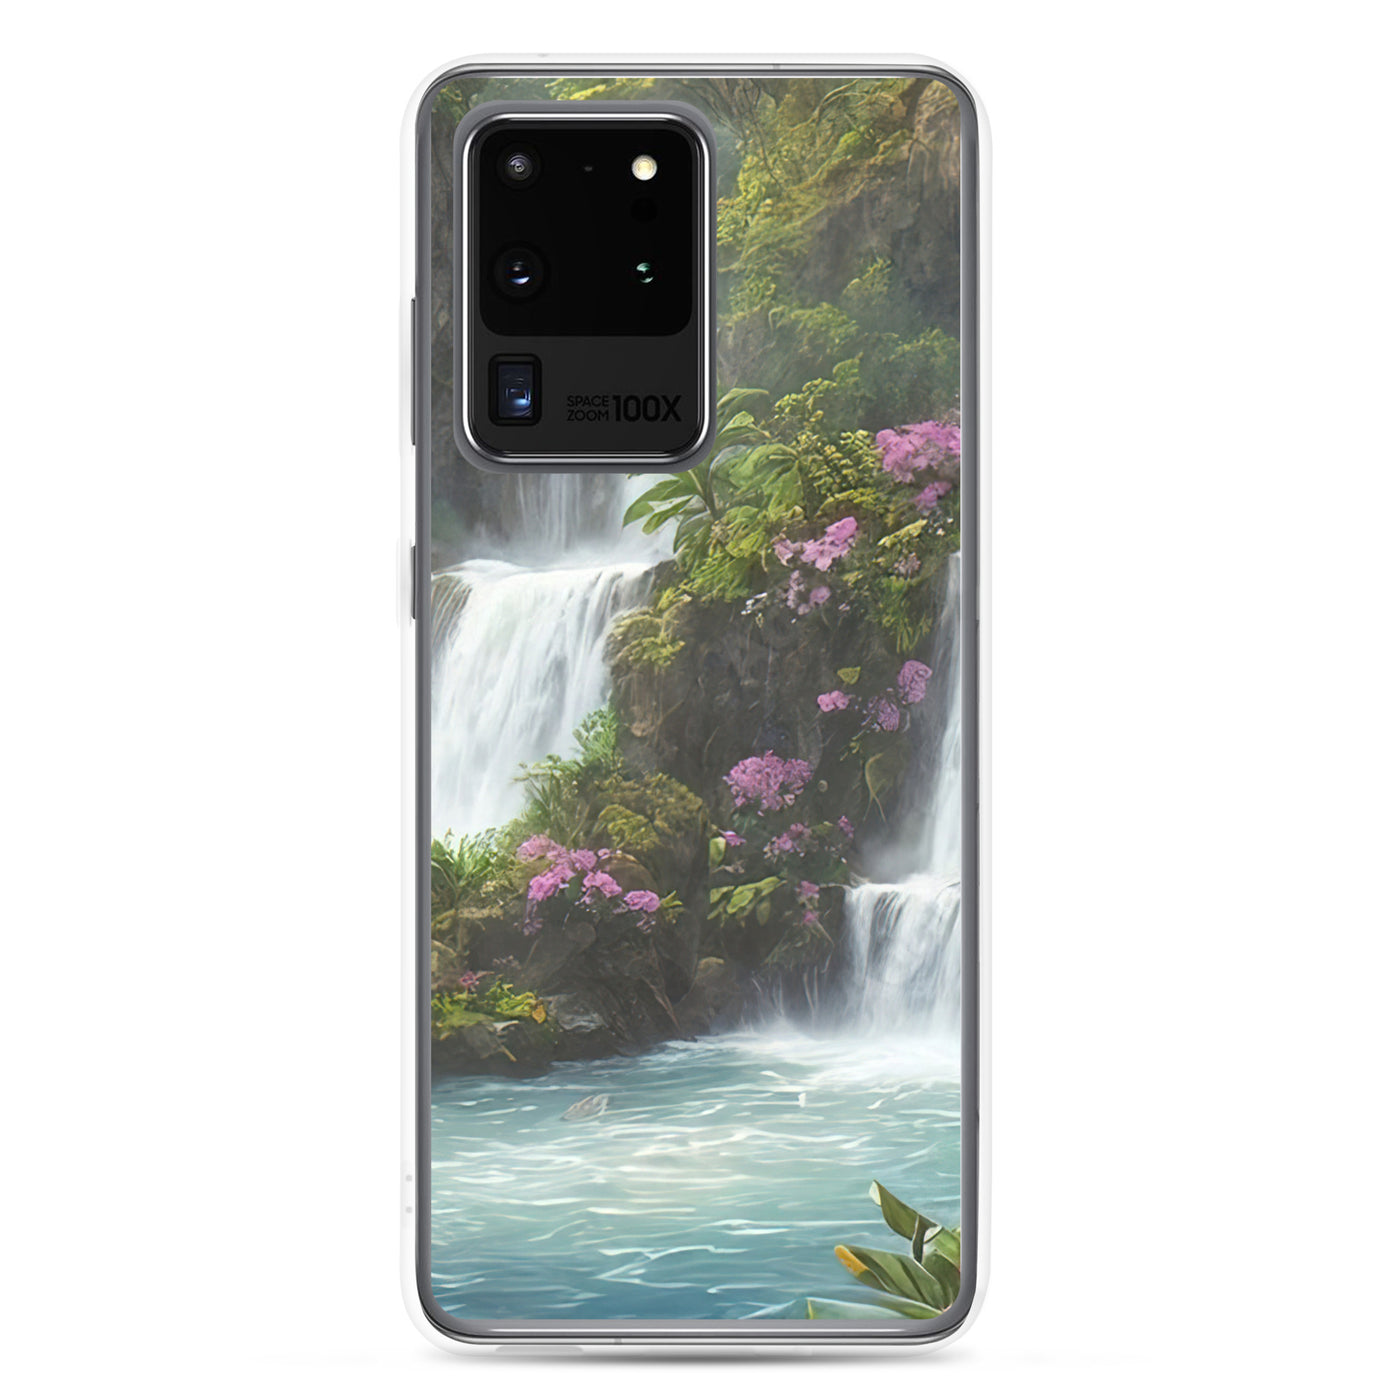 Wasserfall im Wald und Blumen - Schöne Malerei - Samsung Schutzhülle (durchsichtig) camping xxx Samsung Galaxy S20 Ultra